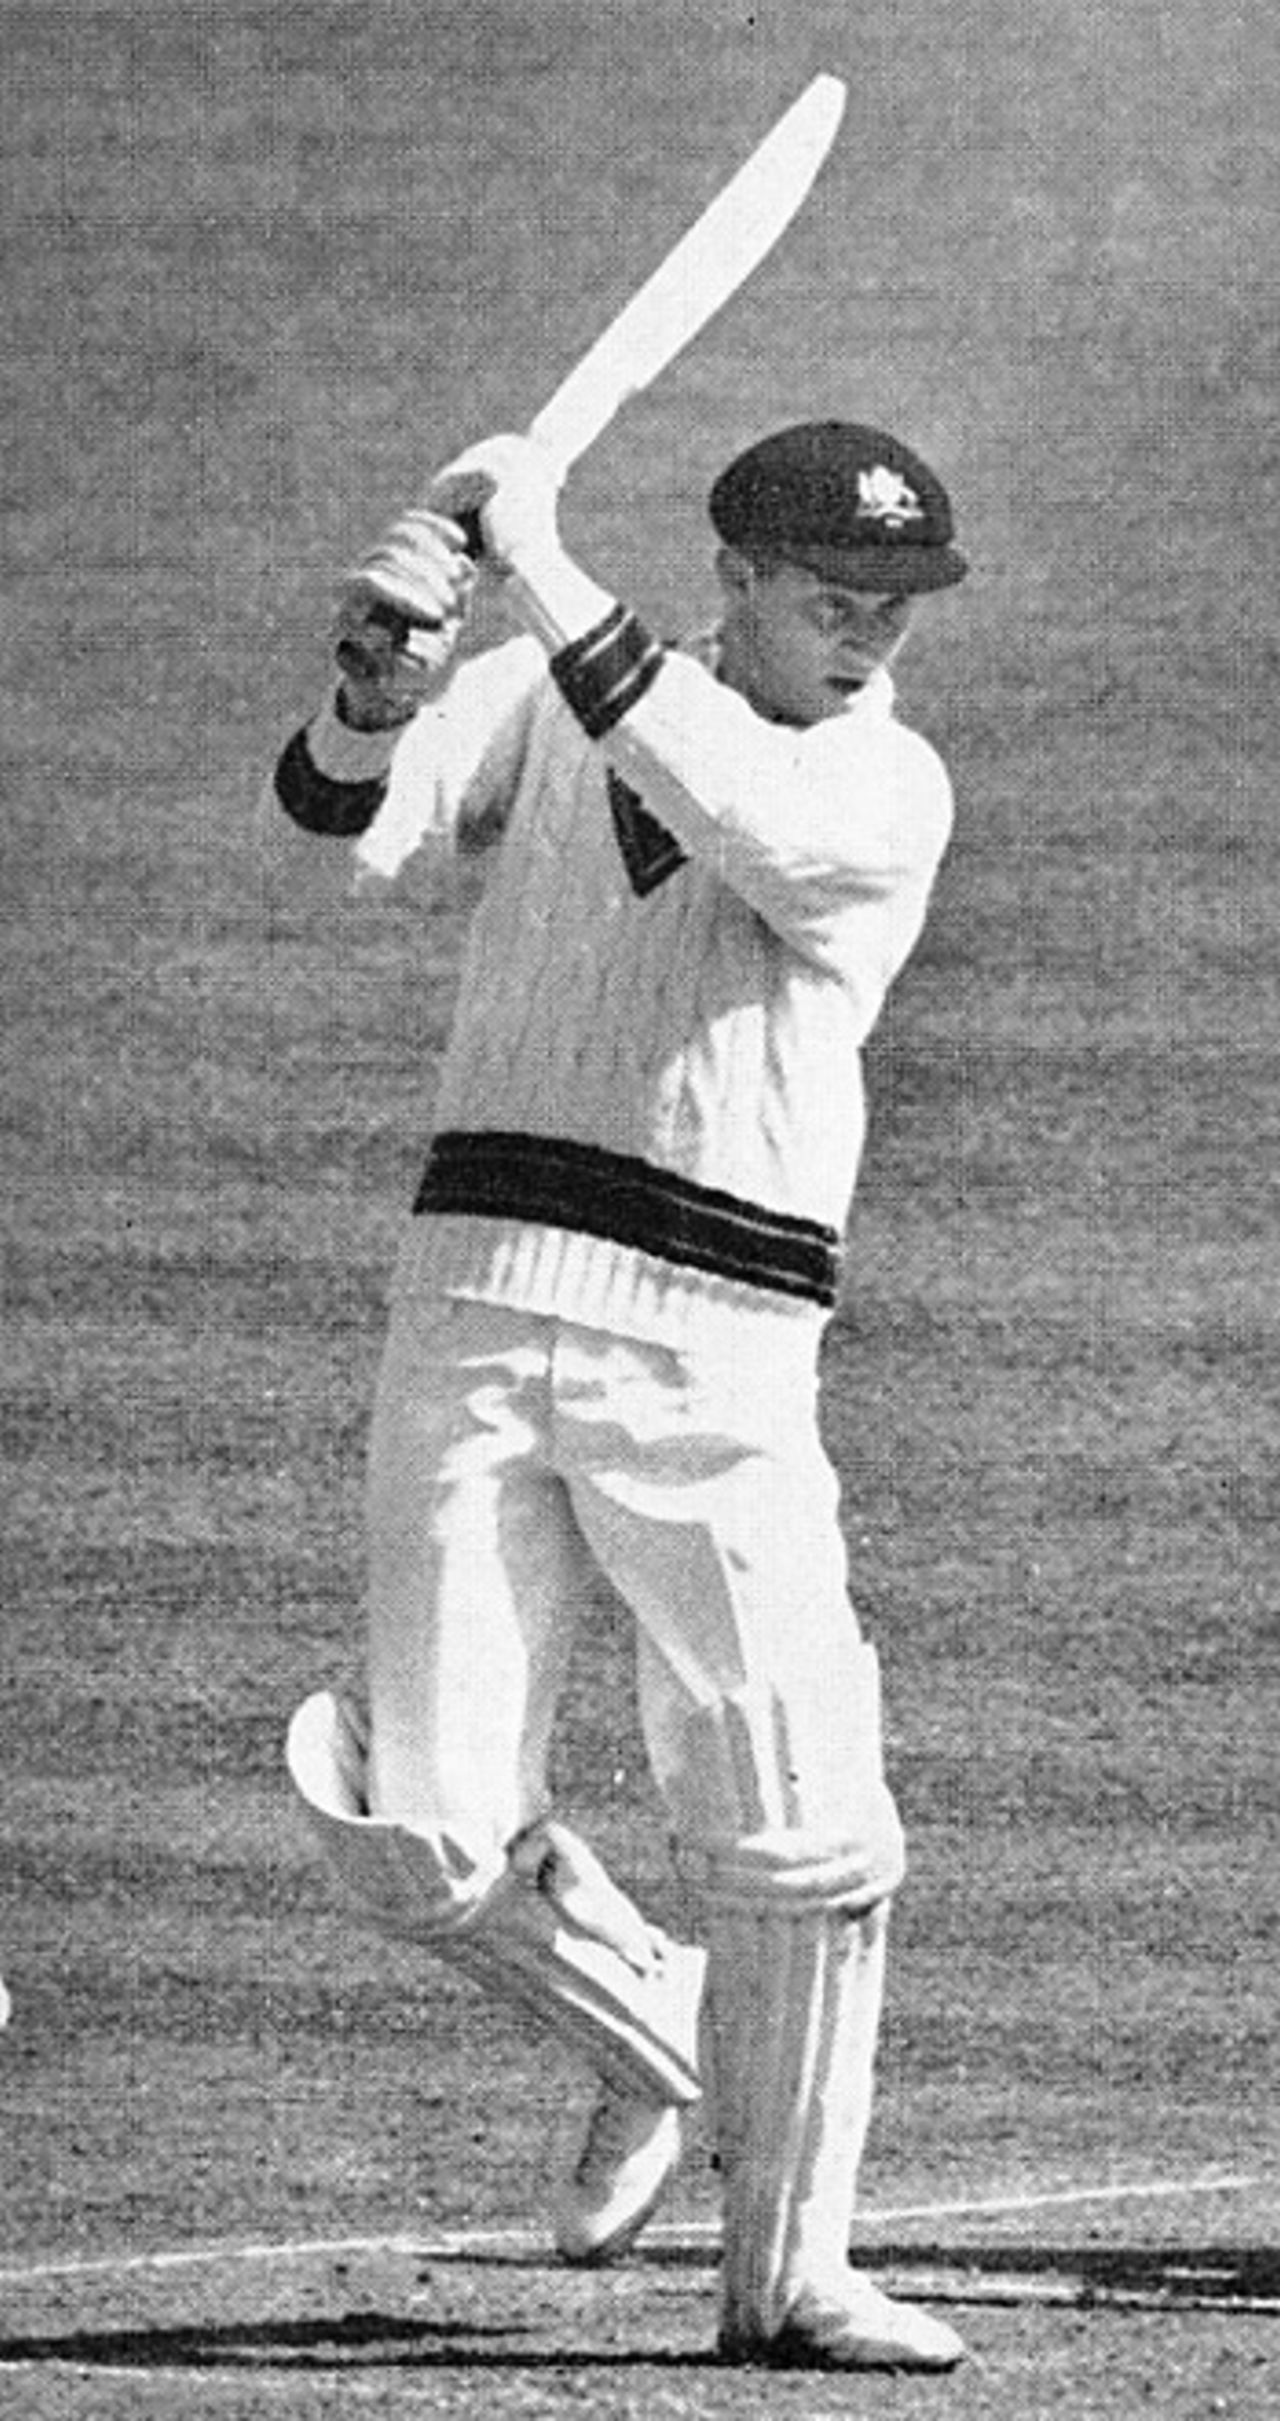 Bob Cowper batting against England in 1965-66